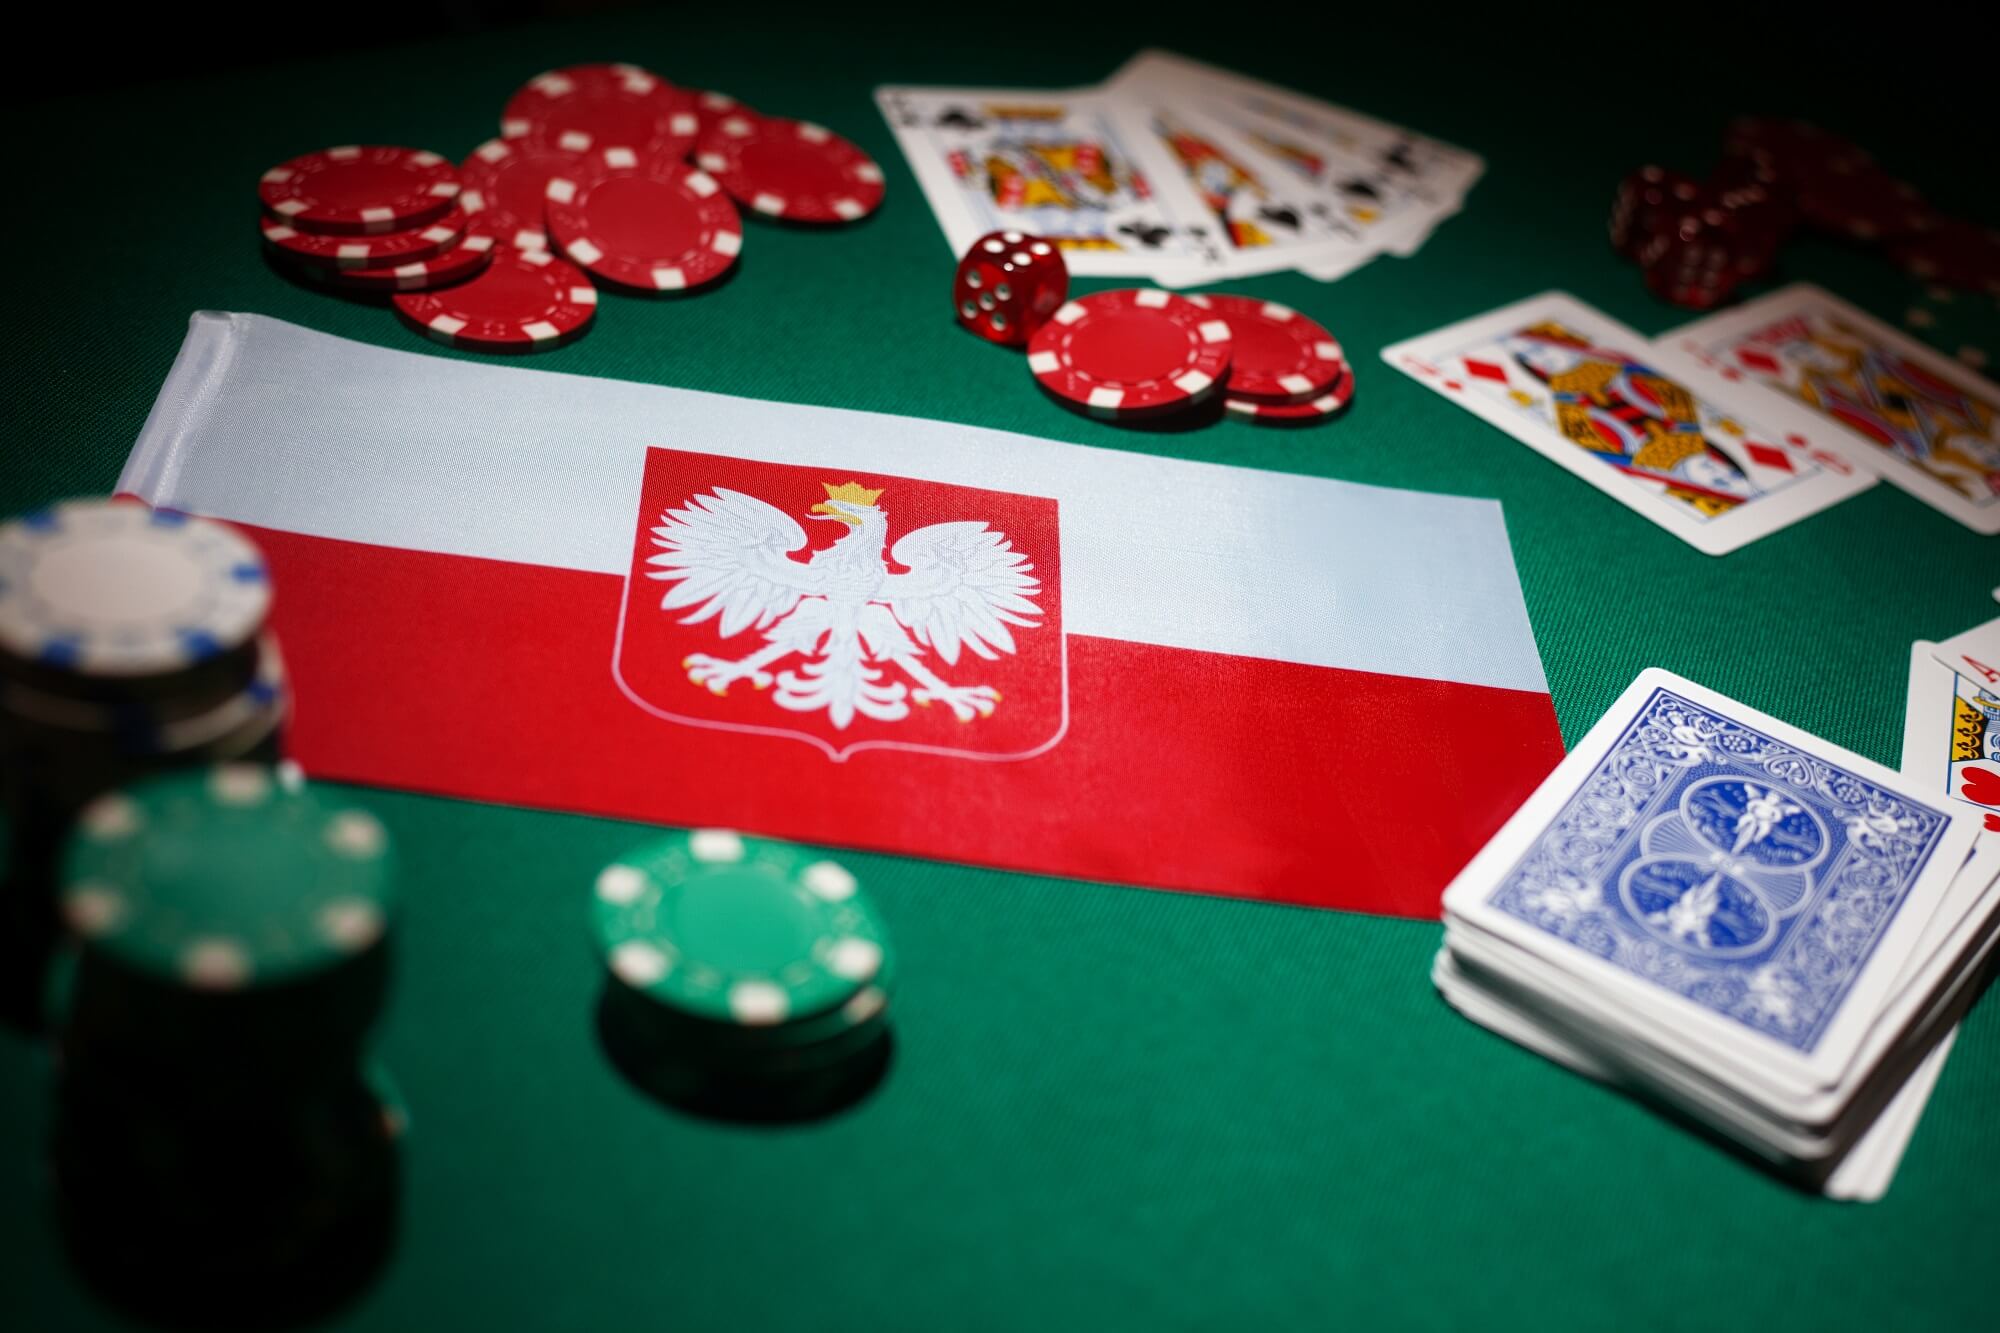 Co to jest pokerze i kasynie i jak to działa?